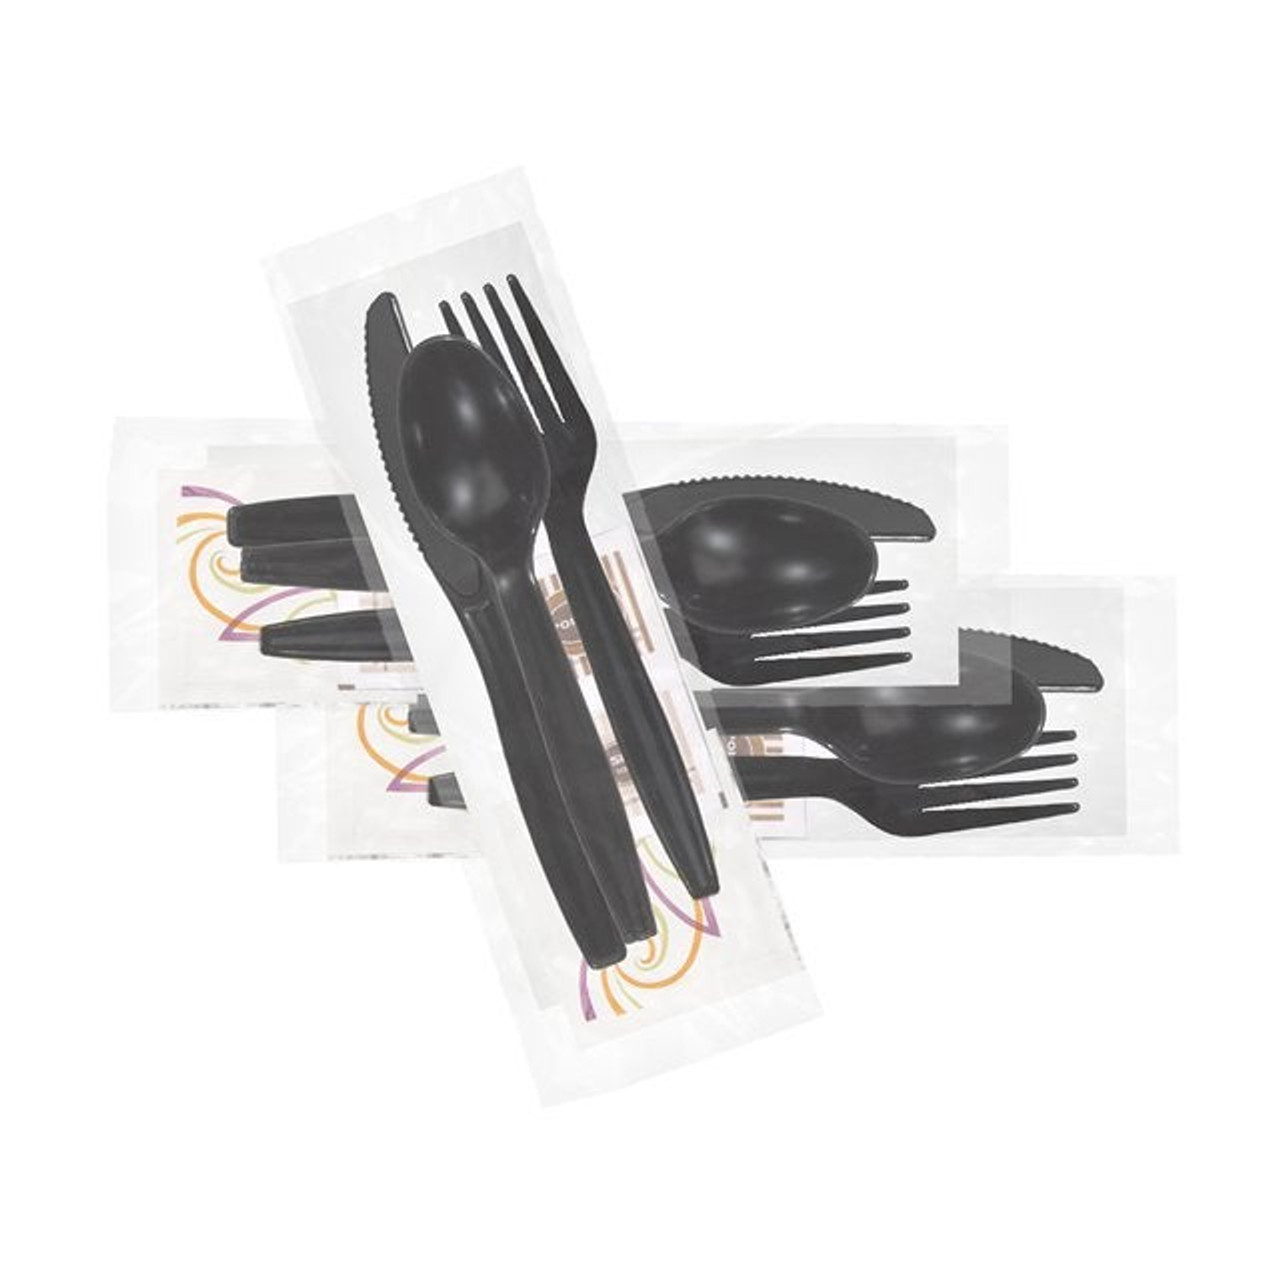 Gordon Choice Black Plastic Cutlery Kits, 7 Piece, Fork, Knife, Soup Spoon, Napkin, Wn, Salt, Pepper | 500UN/Unit, 1 Unit/Case